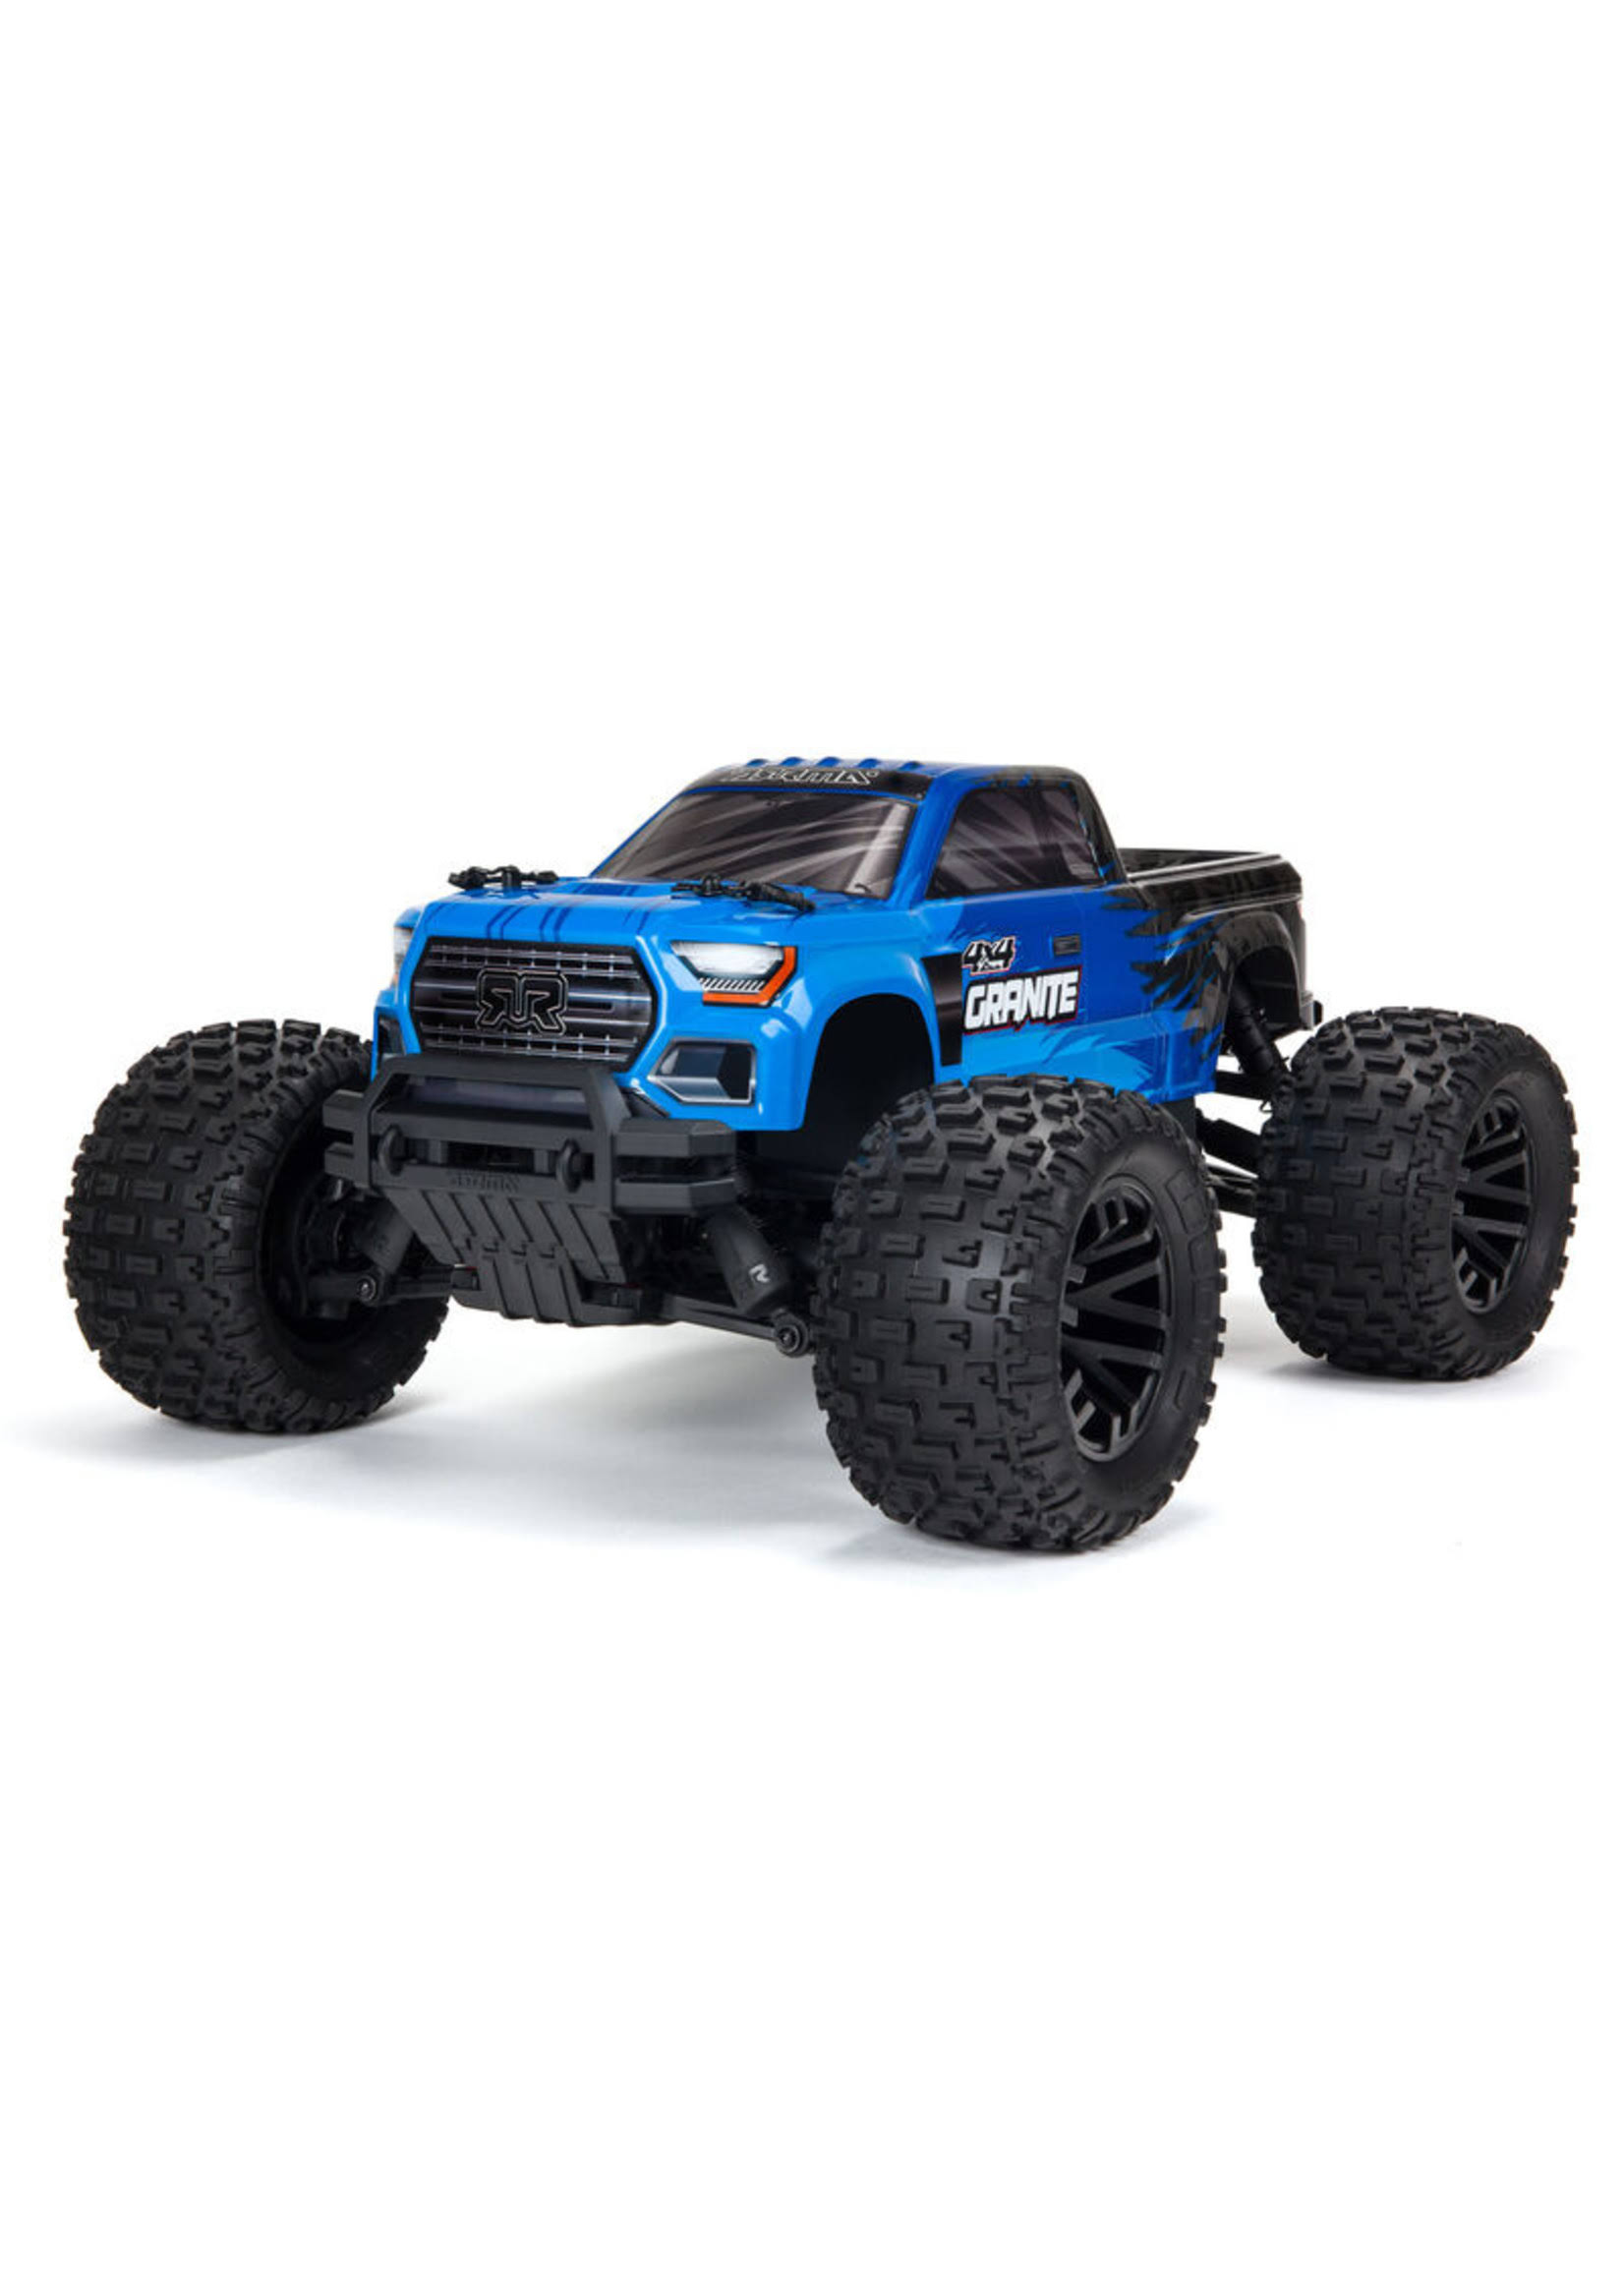 Arrma 1/10 Granite 4x4 Mega RTR Brushed 1/10th 4WD Monster Truck Blue